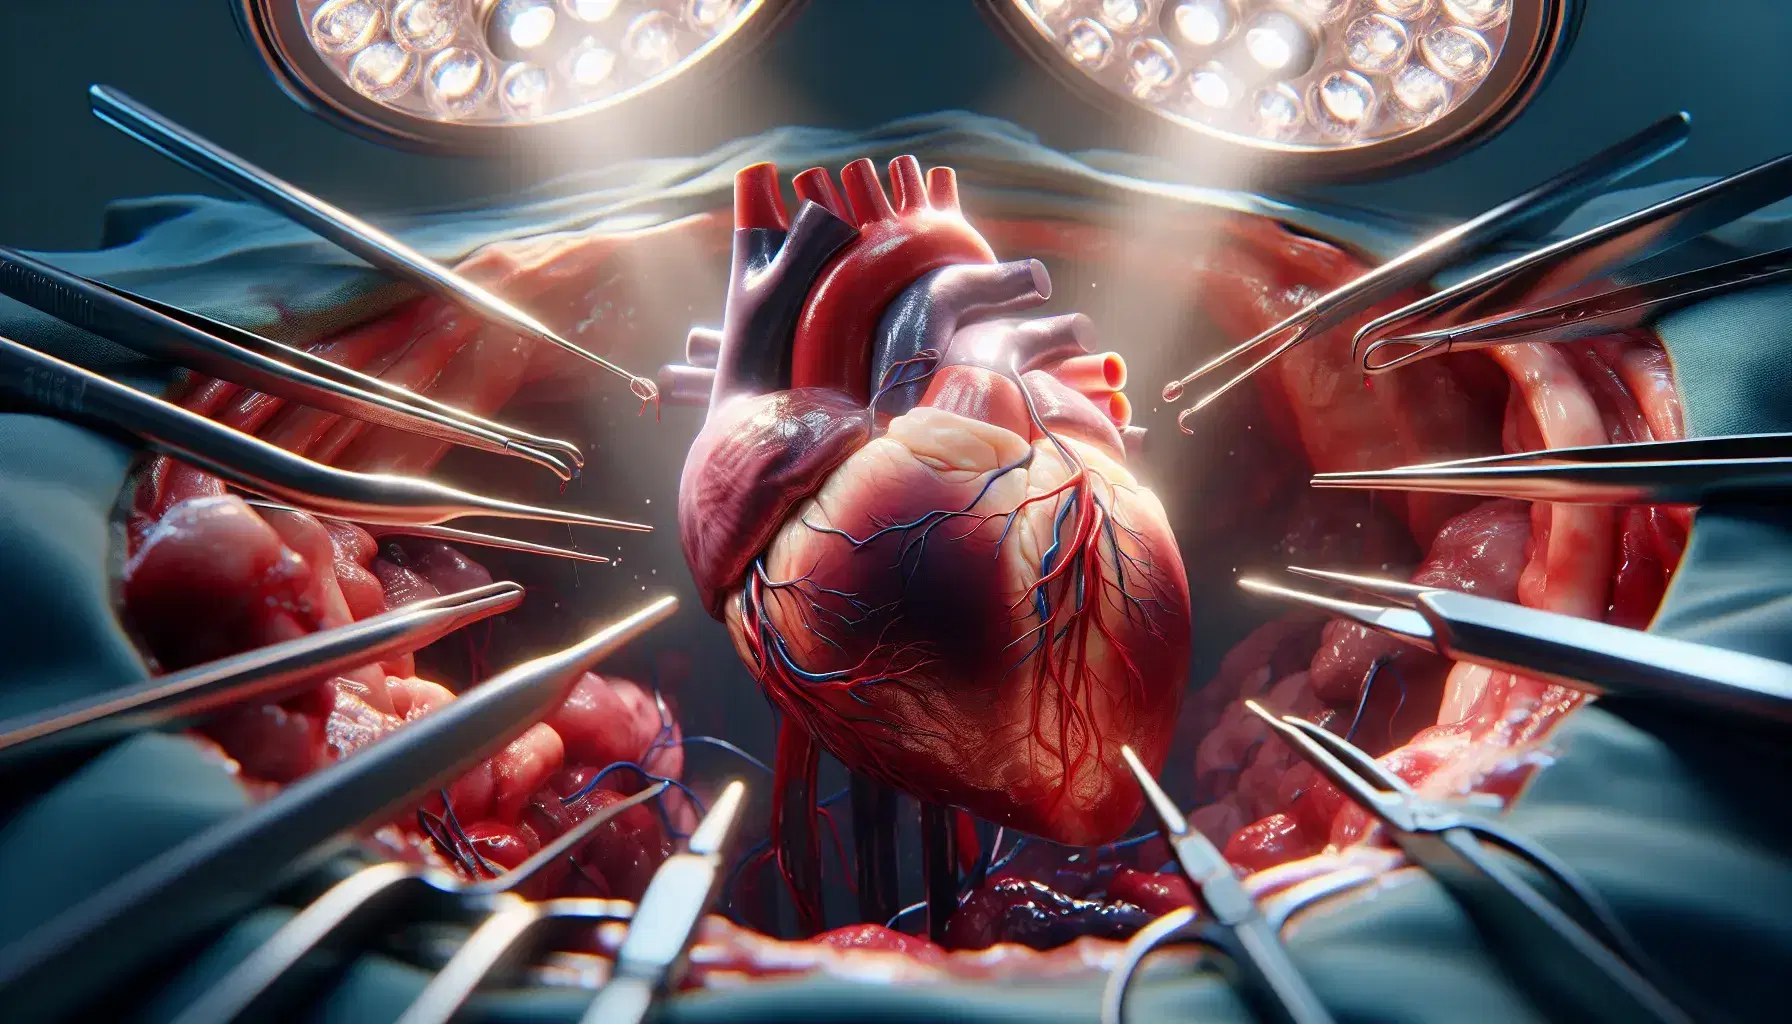 Corazón humano realista durante cirugía con vasos sanguíneos visibles e instrumentos quirúrgicos en fondo desenfocado.